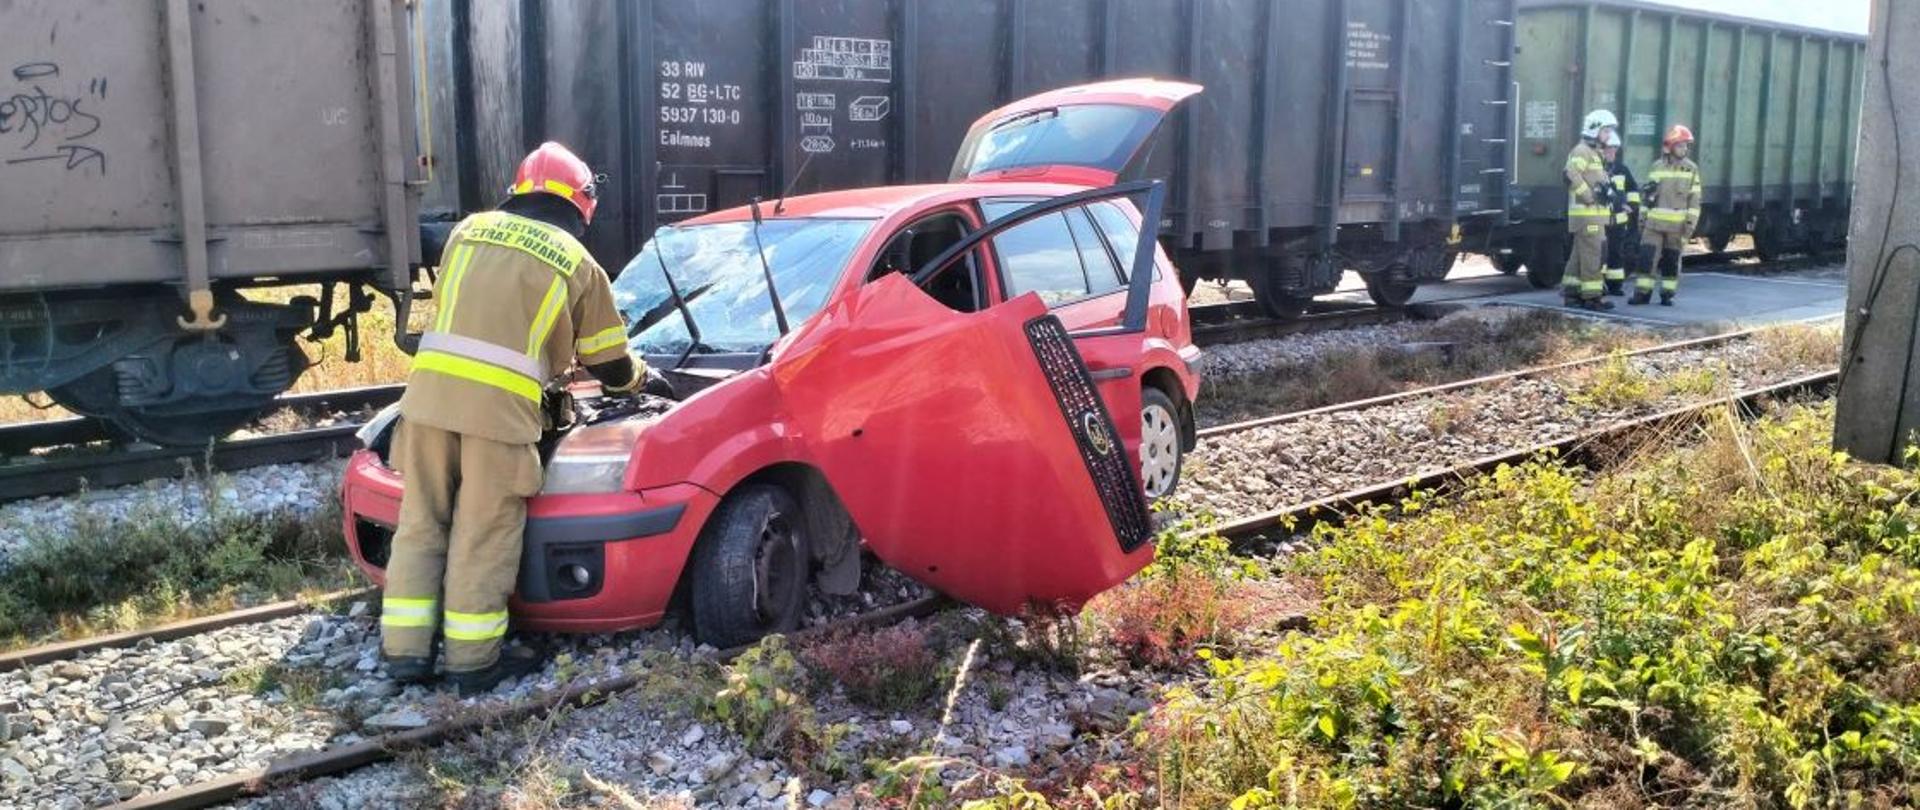 Zdjęcie przedstawia rozbity samochód na torowisku i wagony towarowe pociągu.